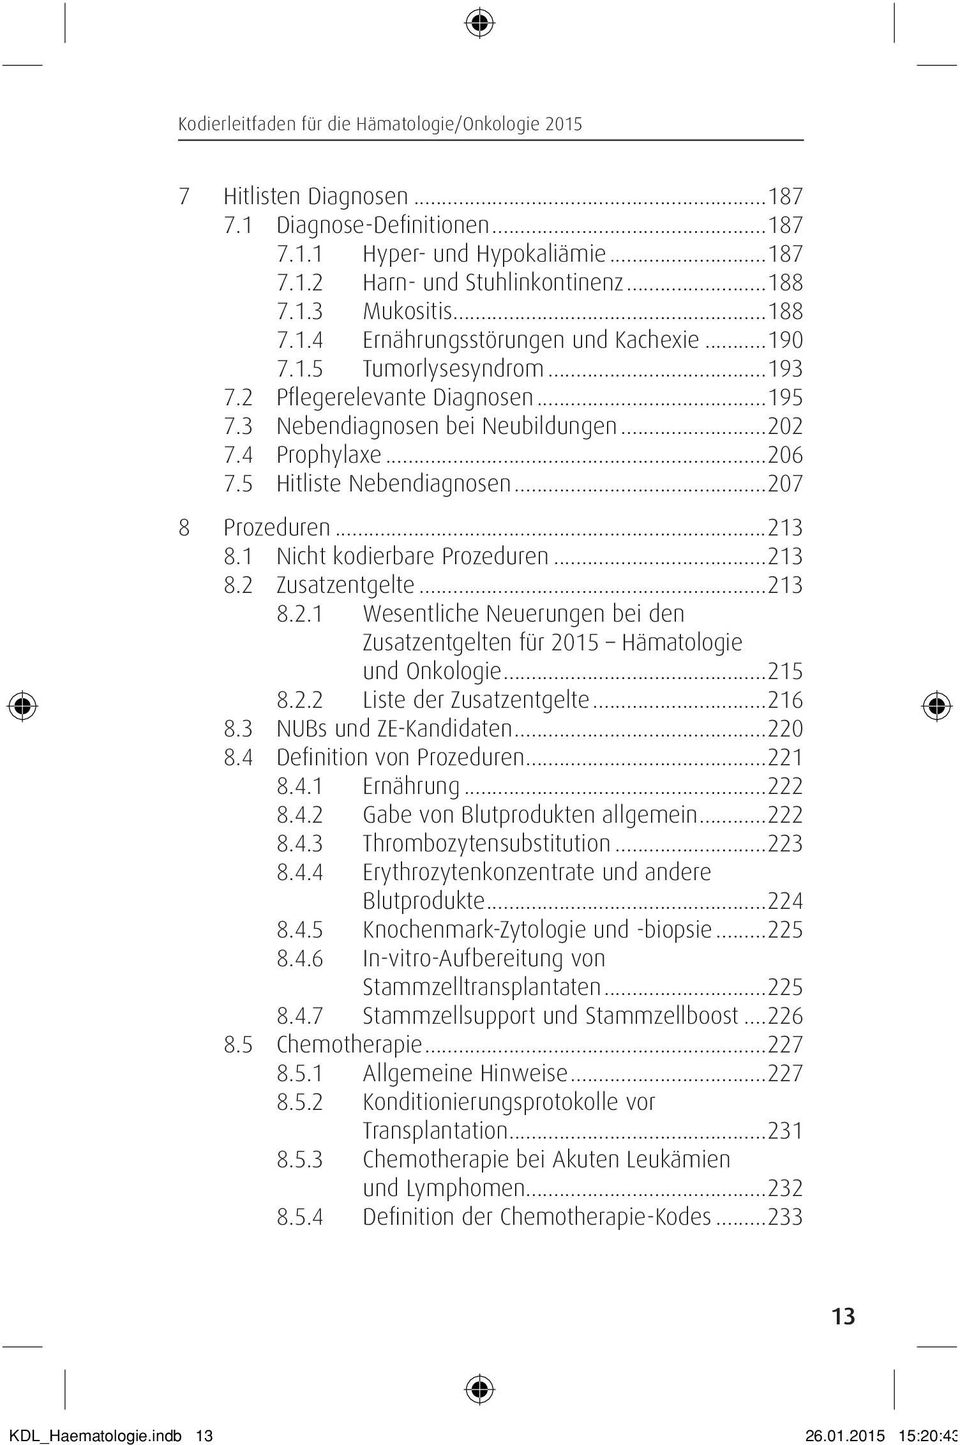 1 Nicht kodierbare Prozeduren...213 8.2 Zusatzentgelte...213 8.2.1 Wesentliche Neuerungen bei den Zusatzentgelten für 2015 Hämatologie und Onkologie...215 8.2.2 Liste der Zusatzentgelte...216 8.